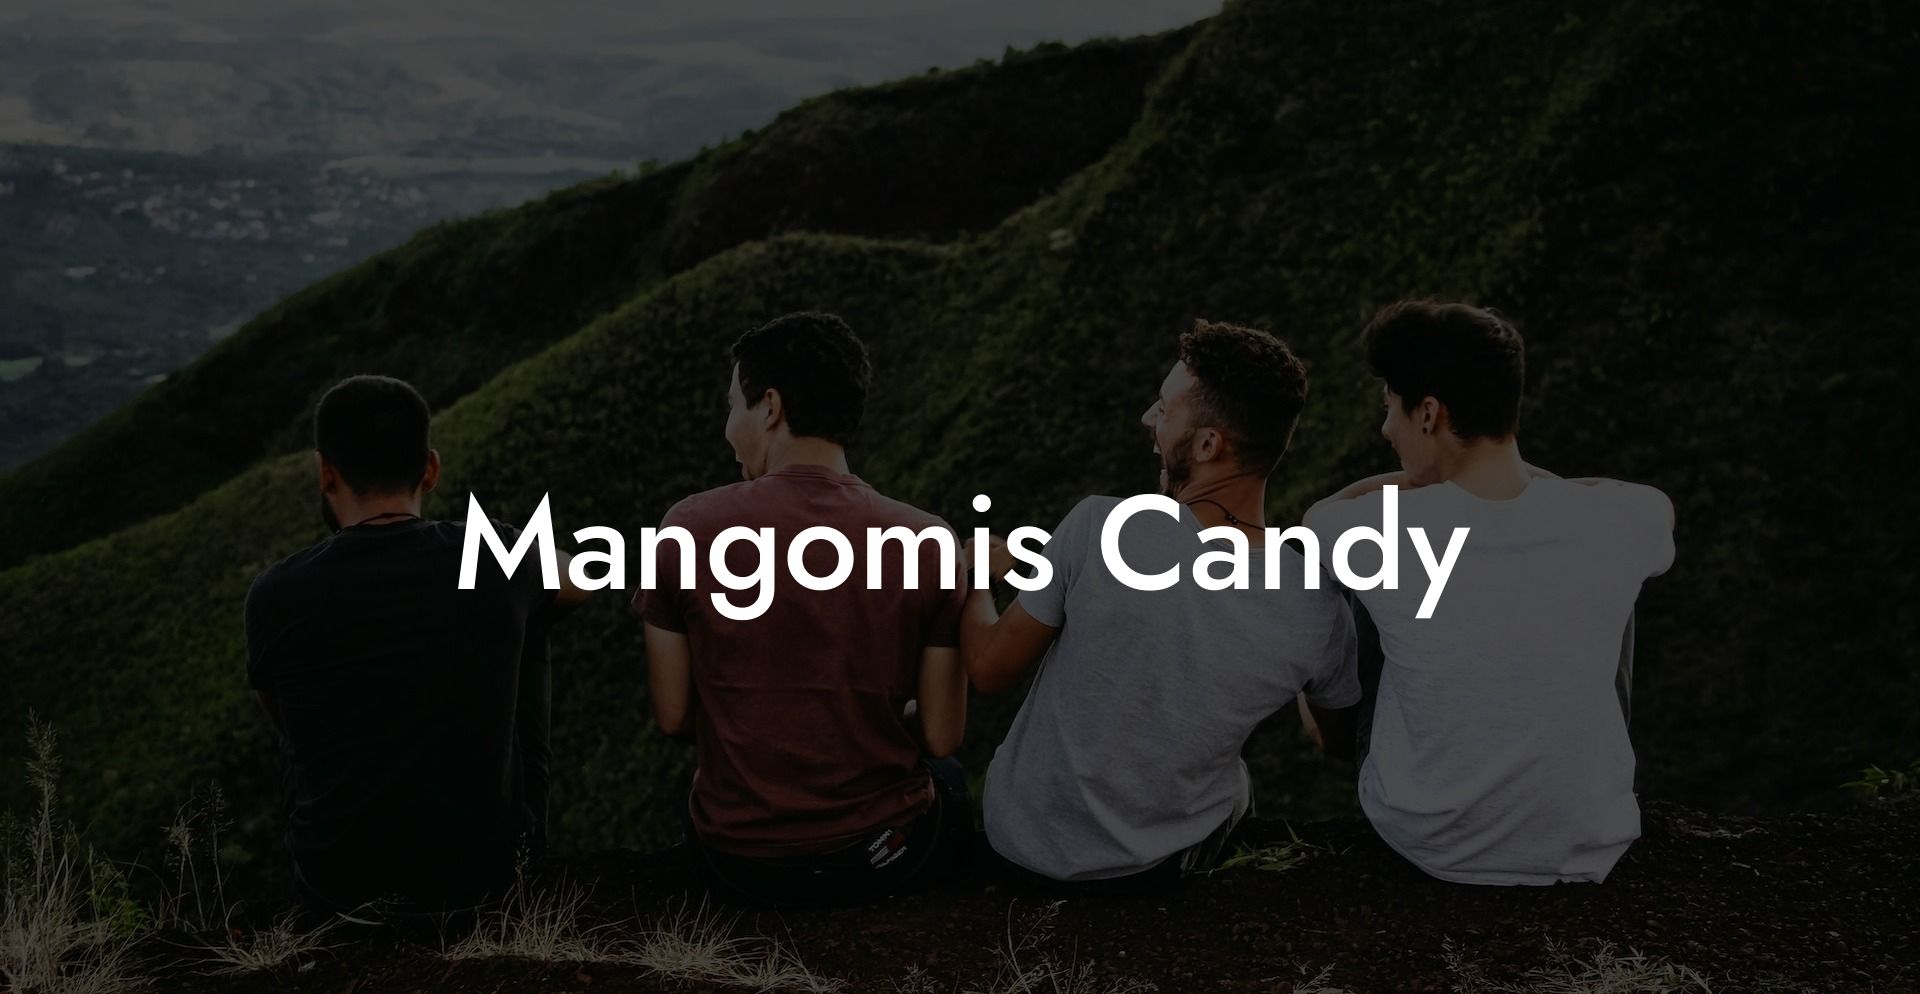 Mangomis Candy